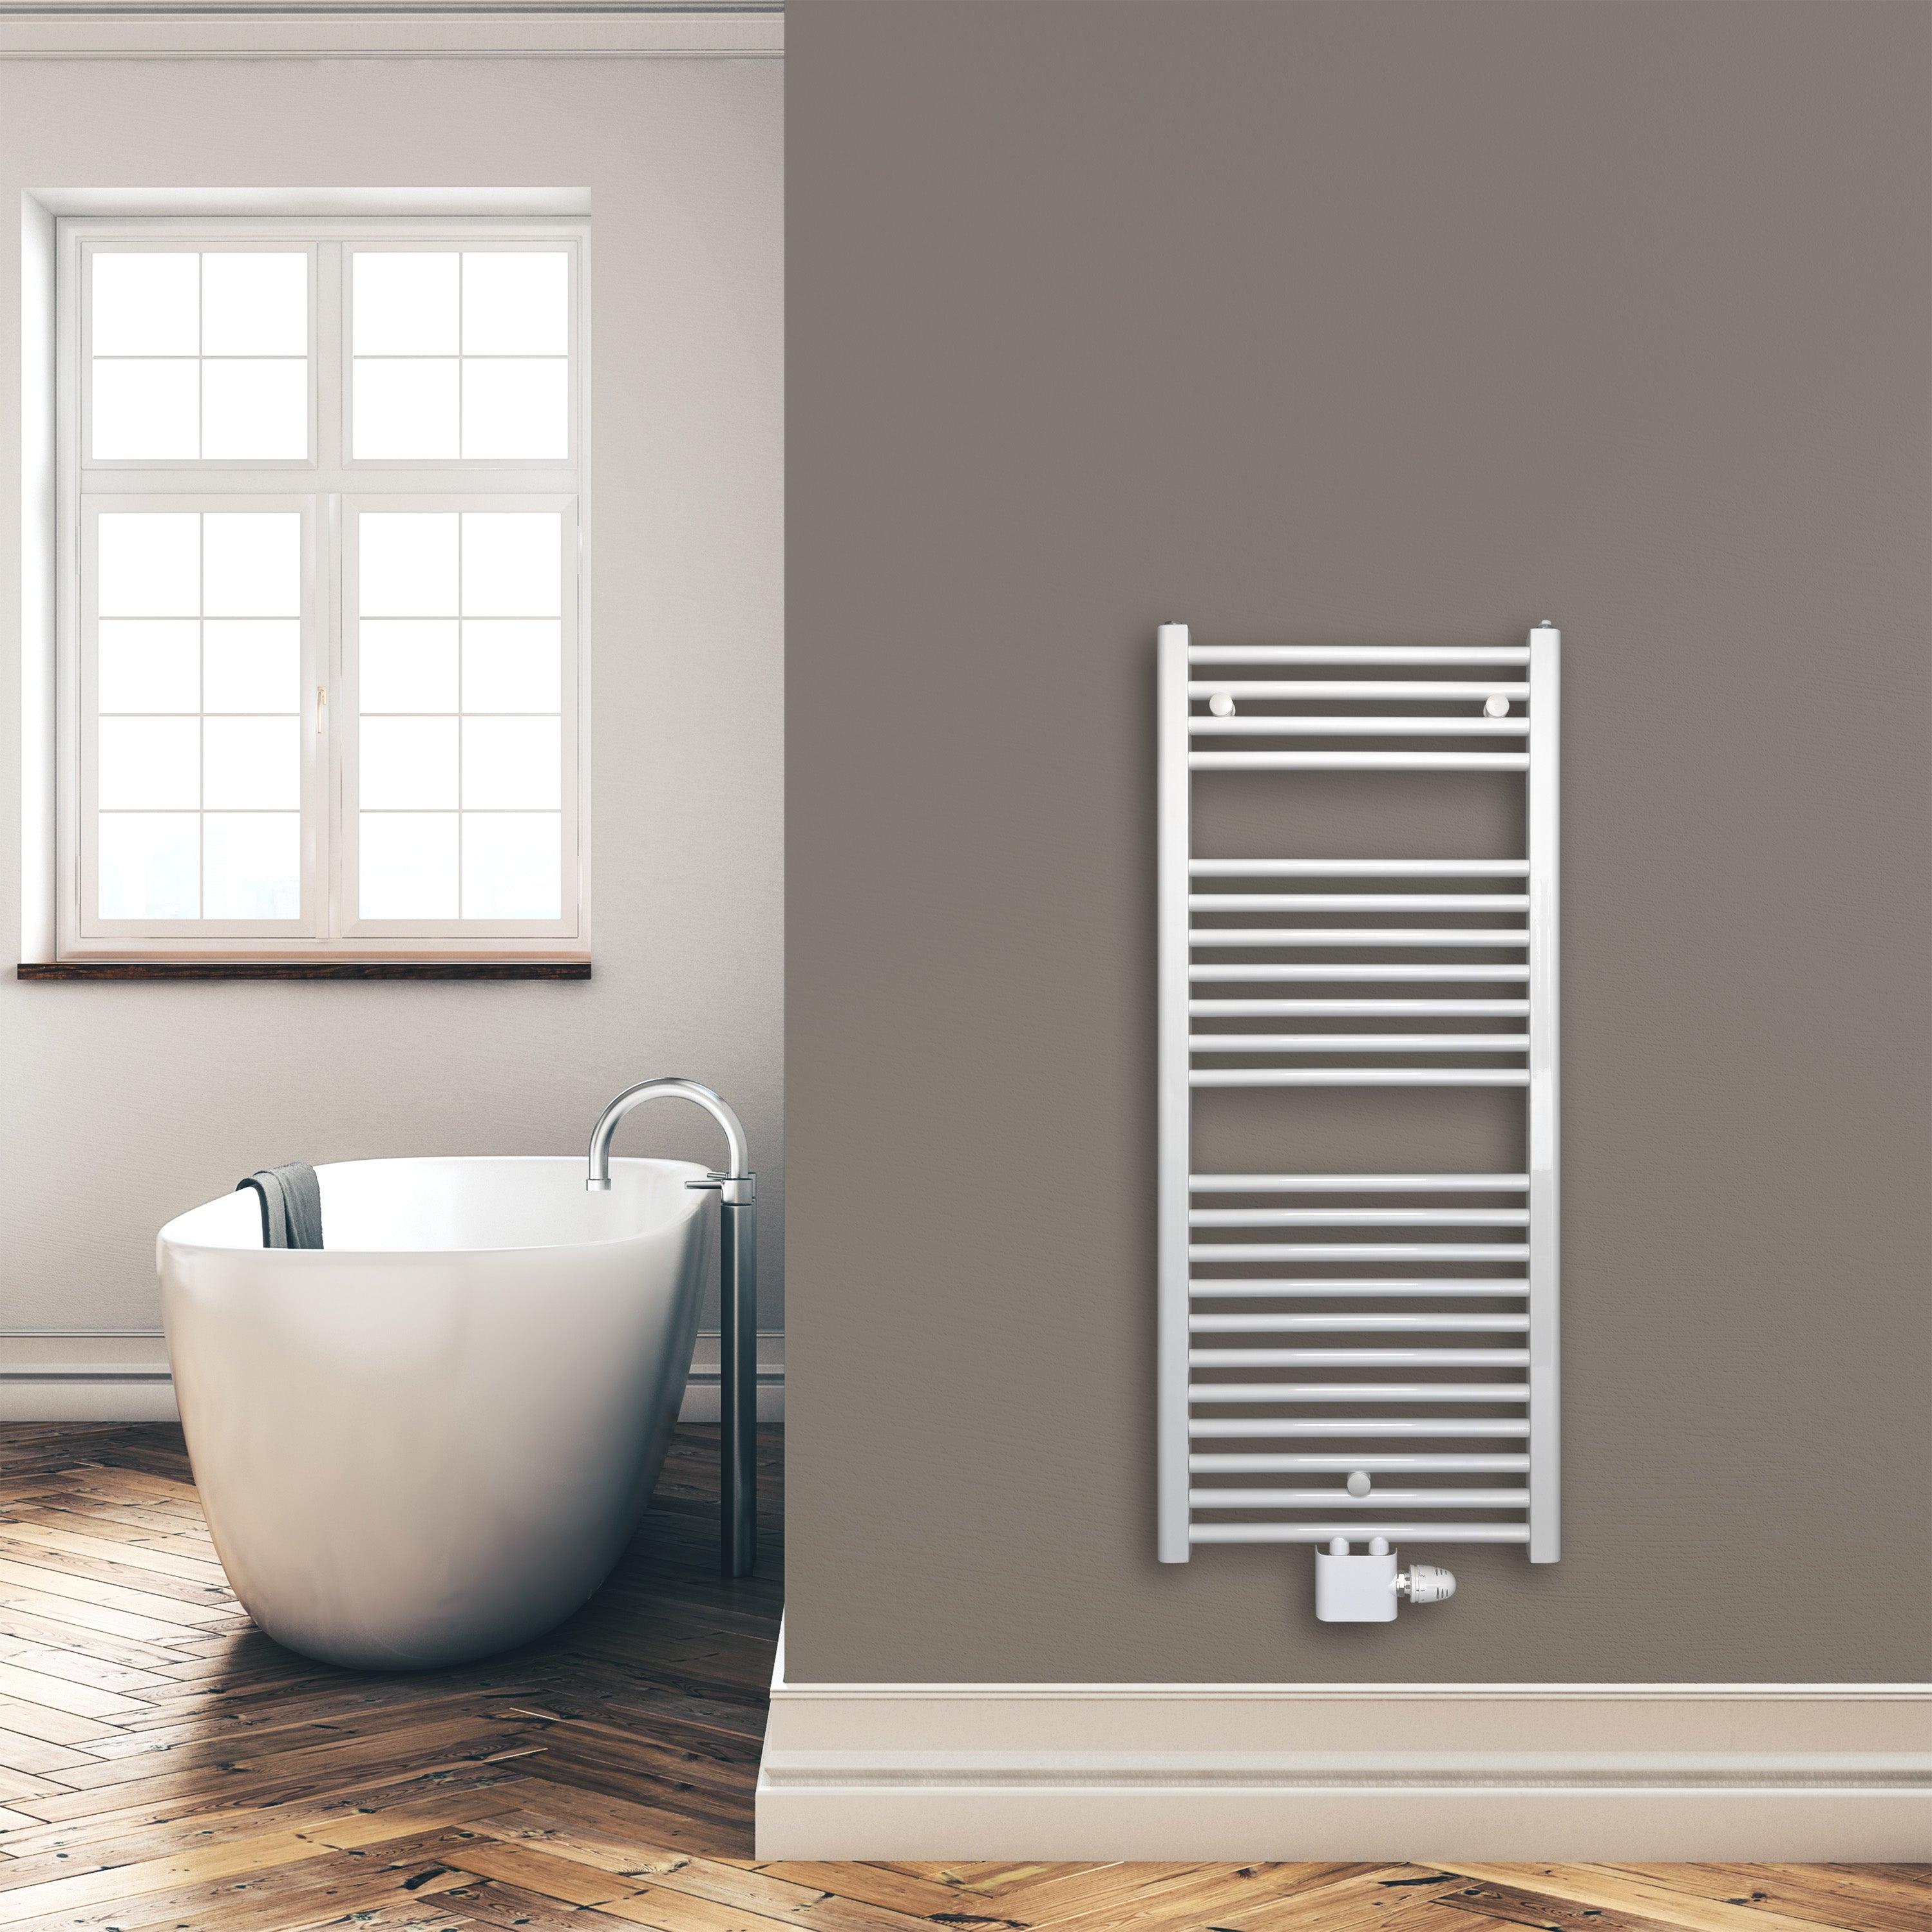 Badheizkörper 1160 x 500 mm gerade mit Mittenanschluss Handtuchhalter Badezimmer Heizung Handtuchwärmer weiß Montagebeispiel - heizkoerper.shop